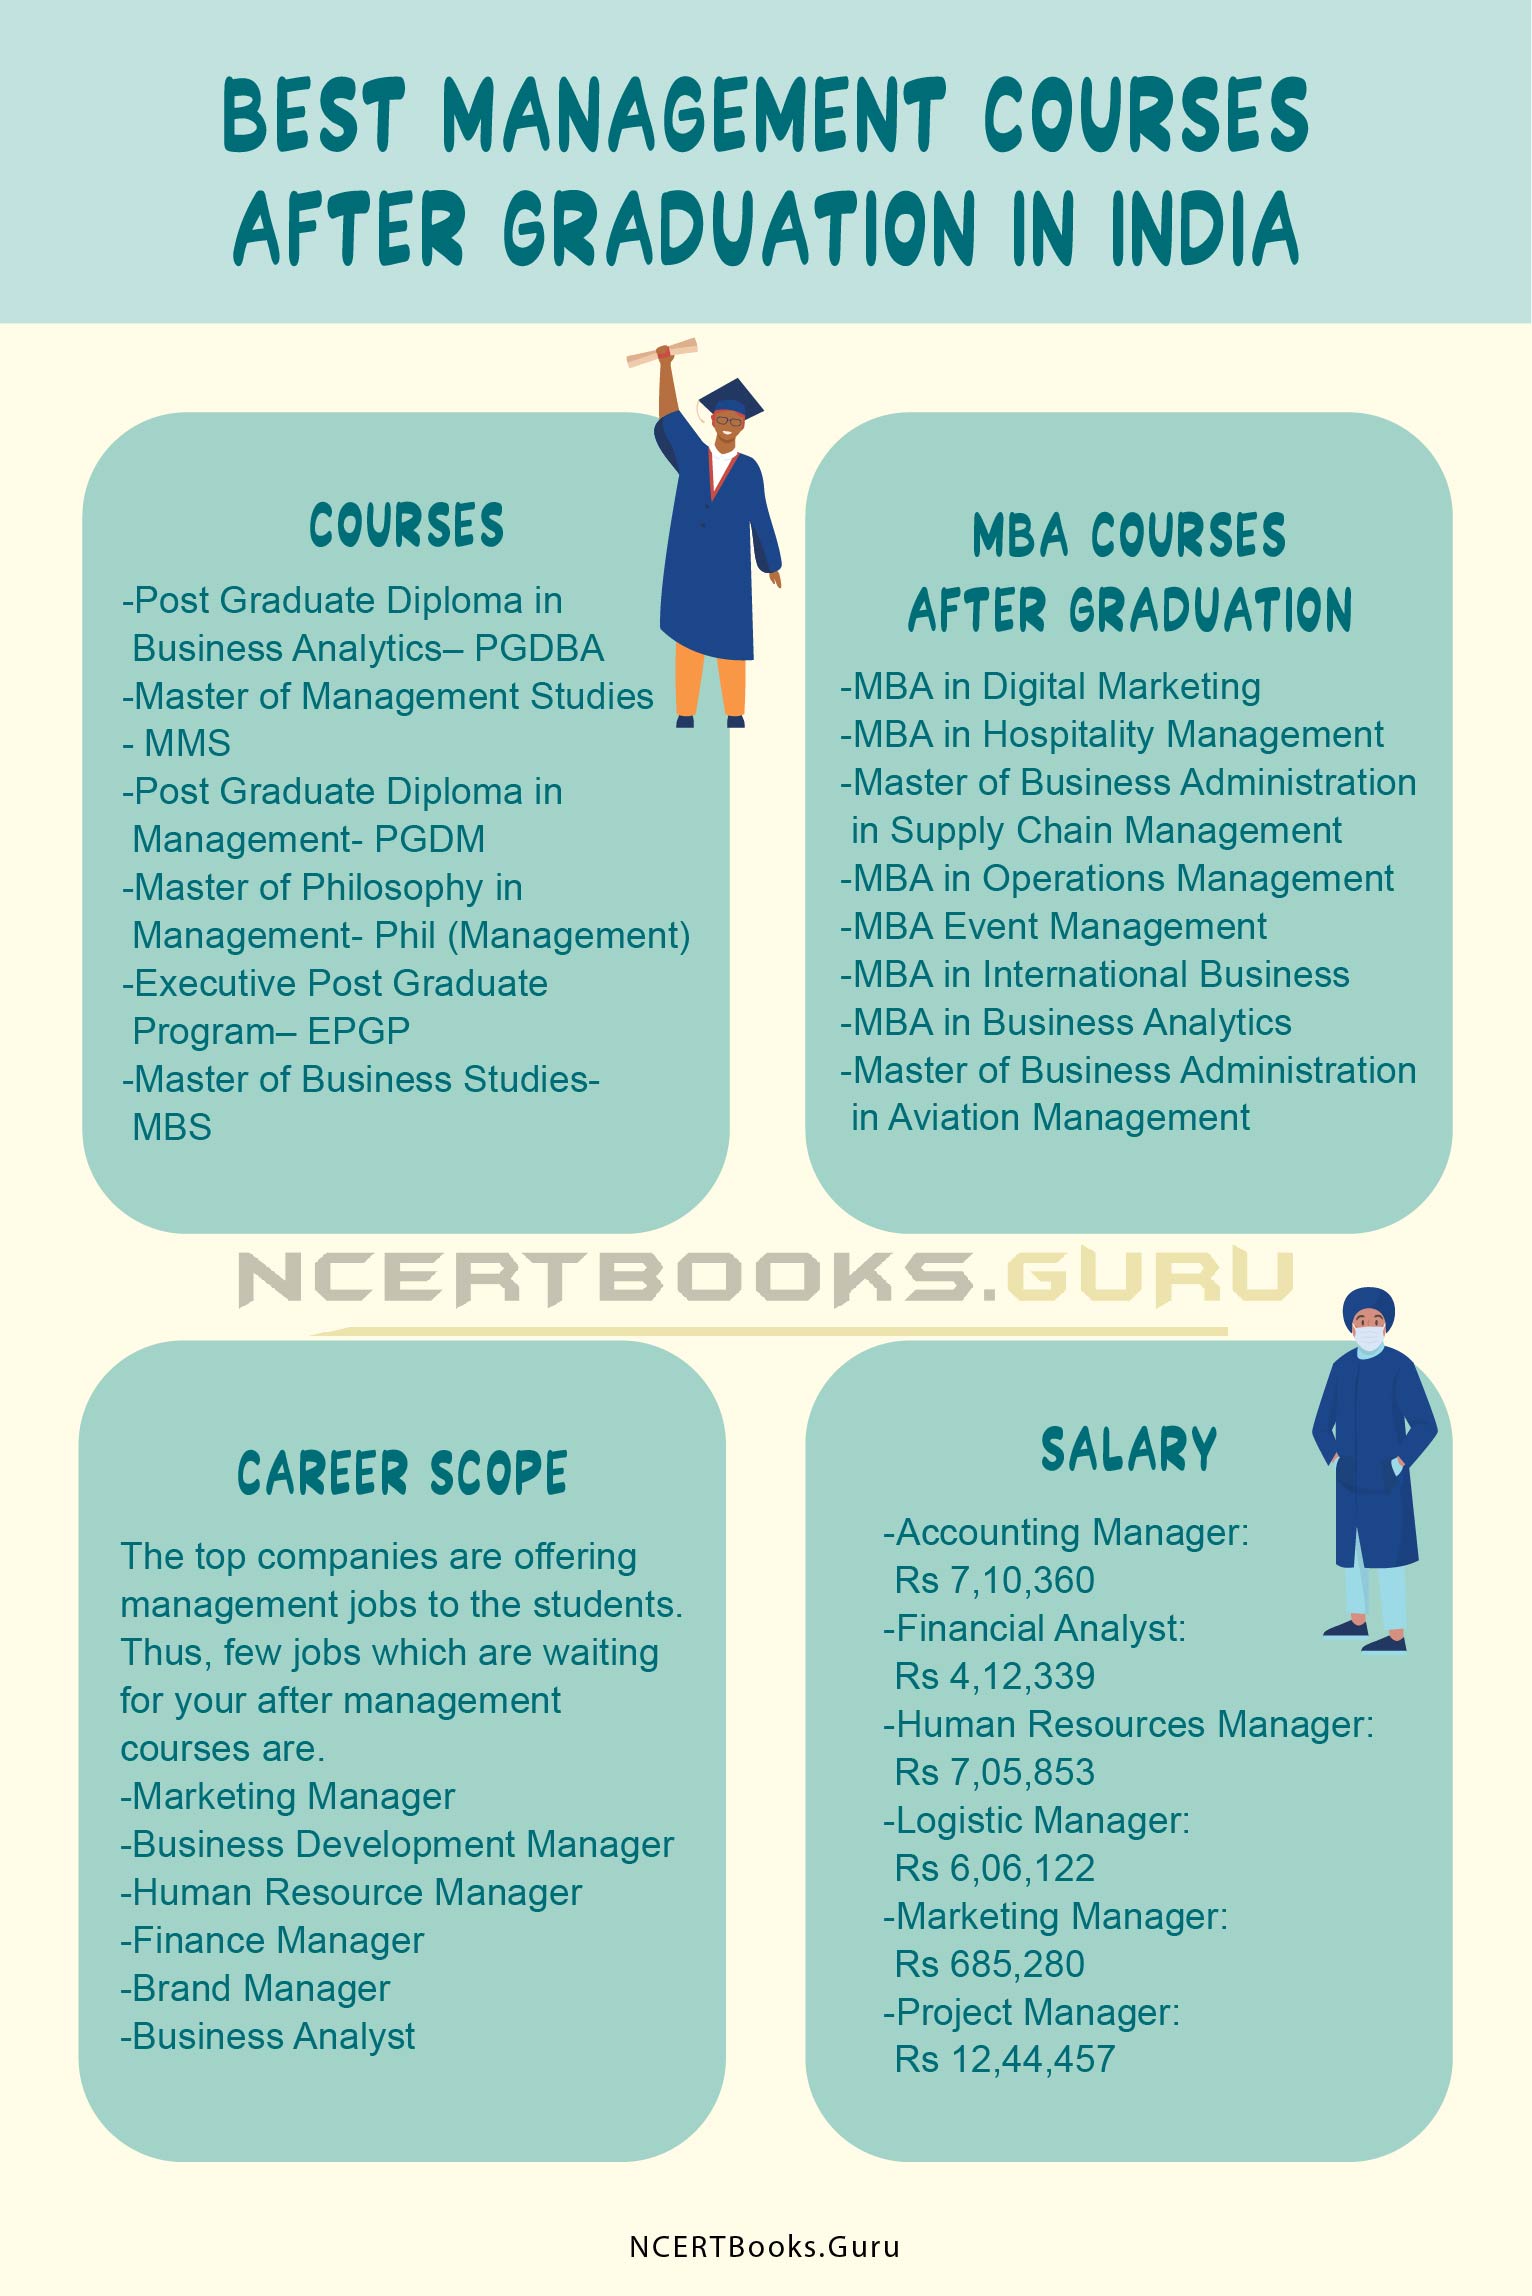 Management Courses after Graduation